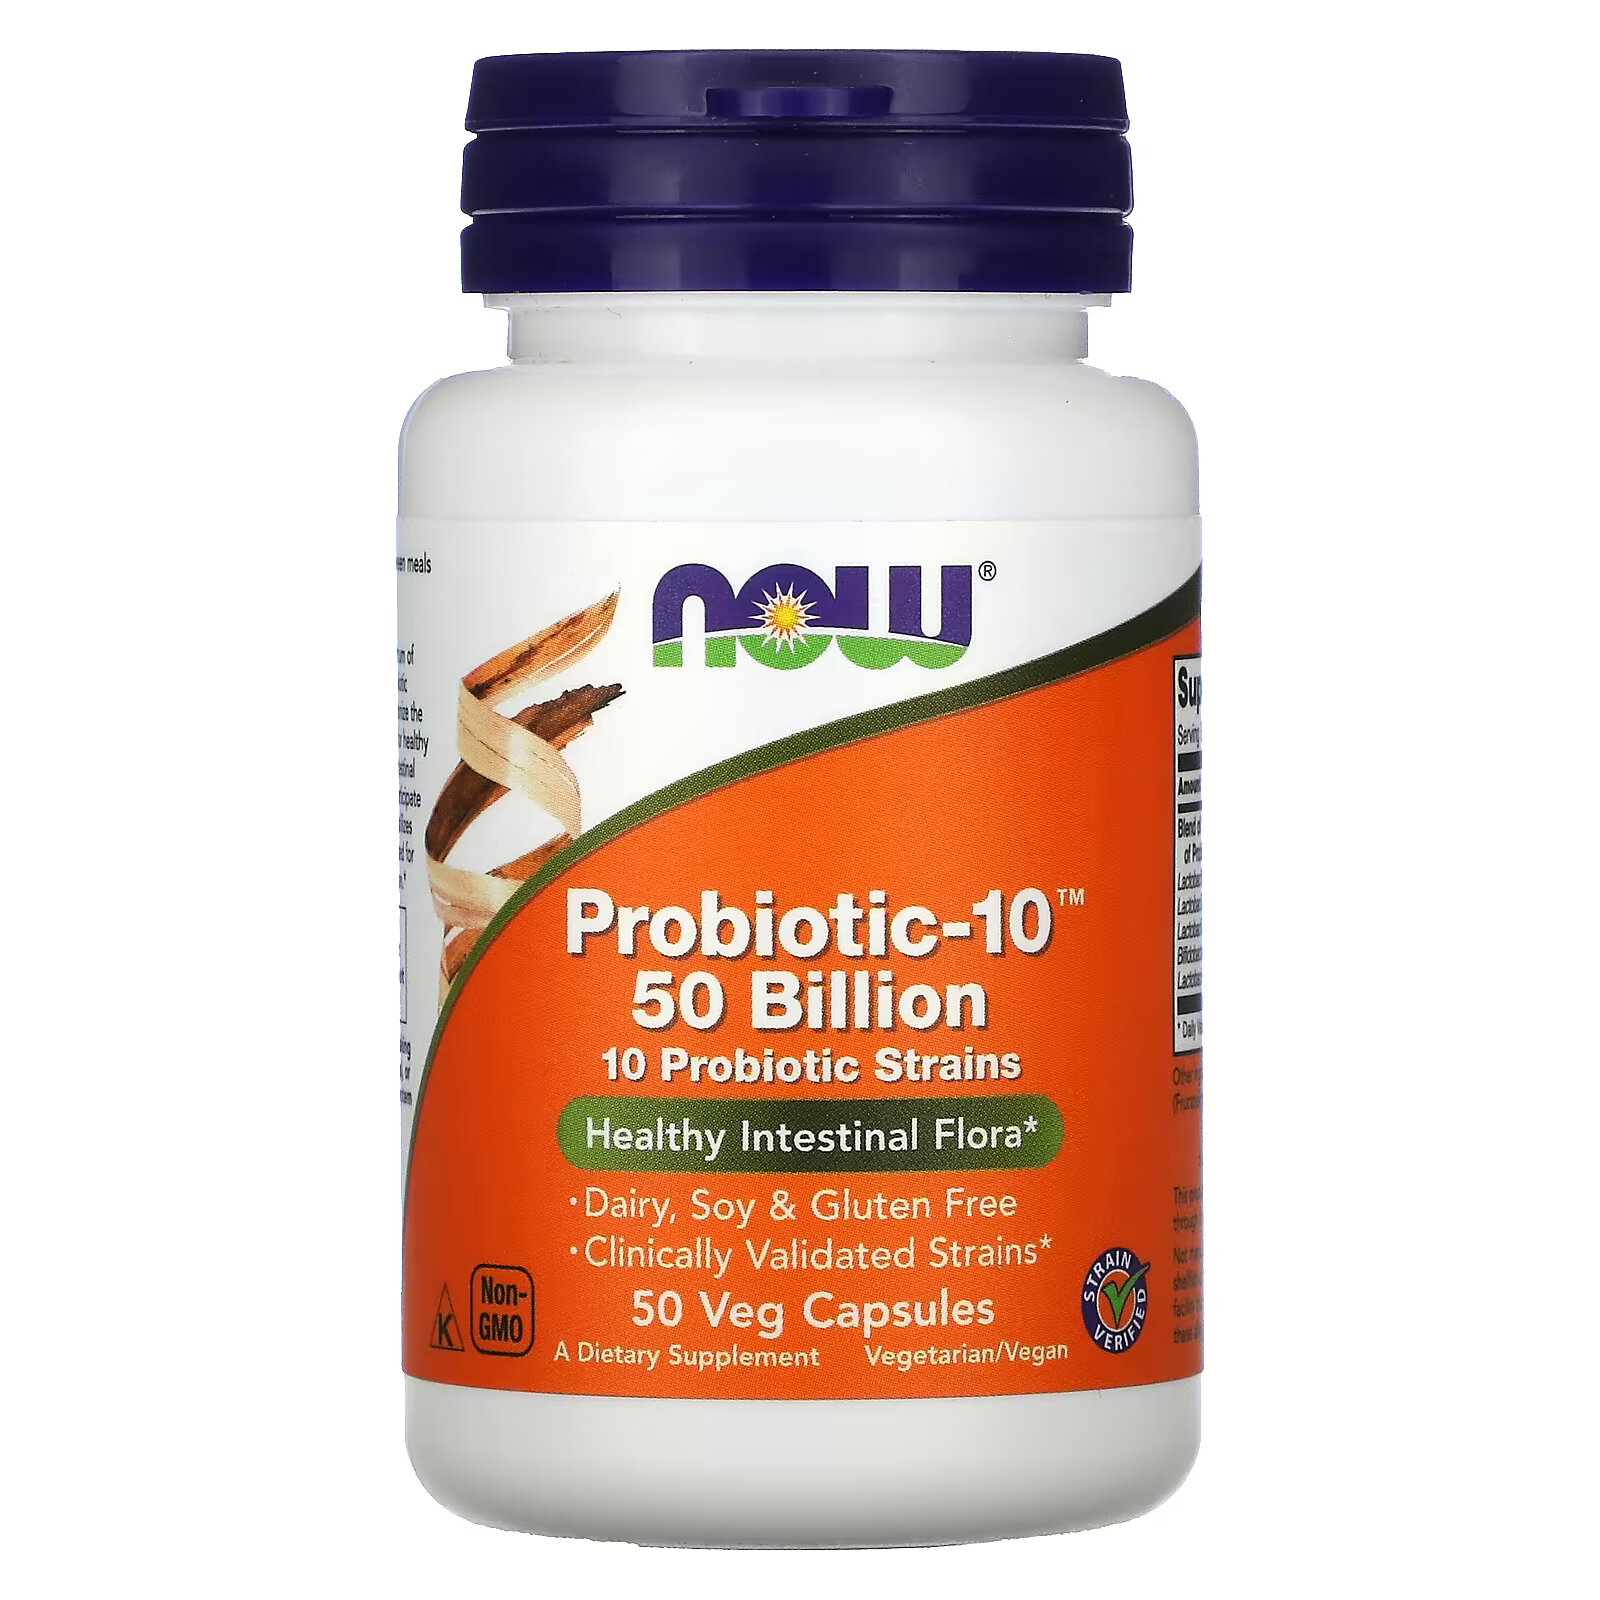 Пробиотик - 10 NOW Foods 50 млрд, 50 капсул now foods probiotic 10 50 млрд 50 вегетарианских капсул